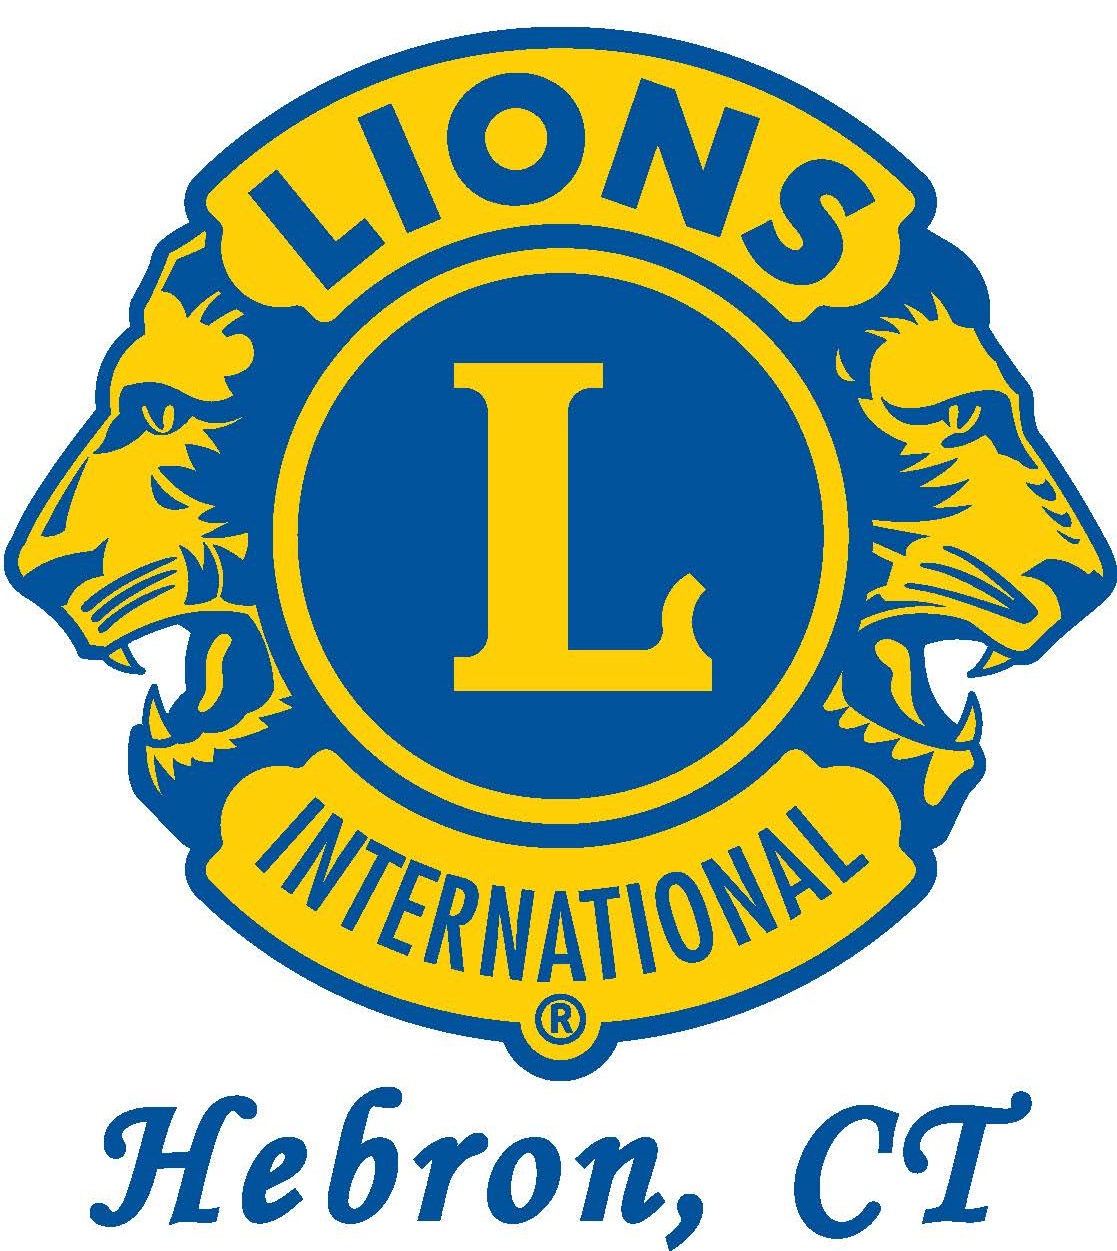 Hebron Lions Club (Elite)